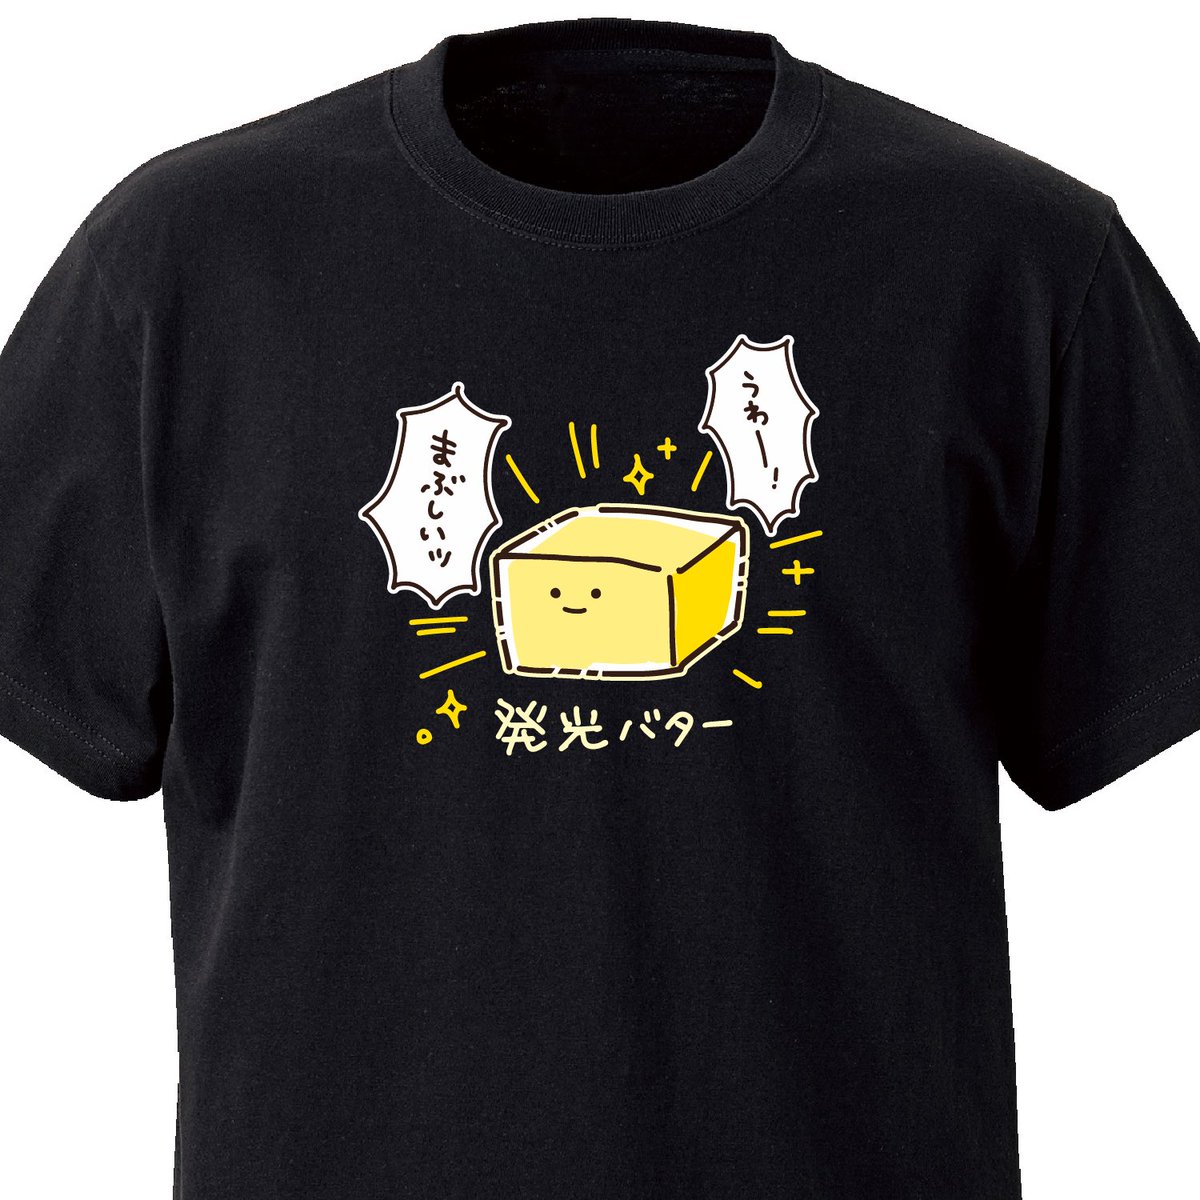 うわー!

発光バター ekot Tシャツ 
<イラスト:タカ(笹川ラメ子)> 
https://t.co/9kBoL22tlY 